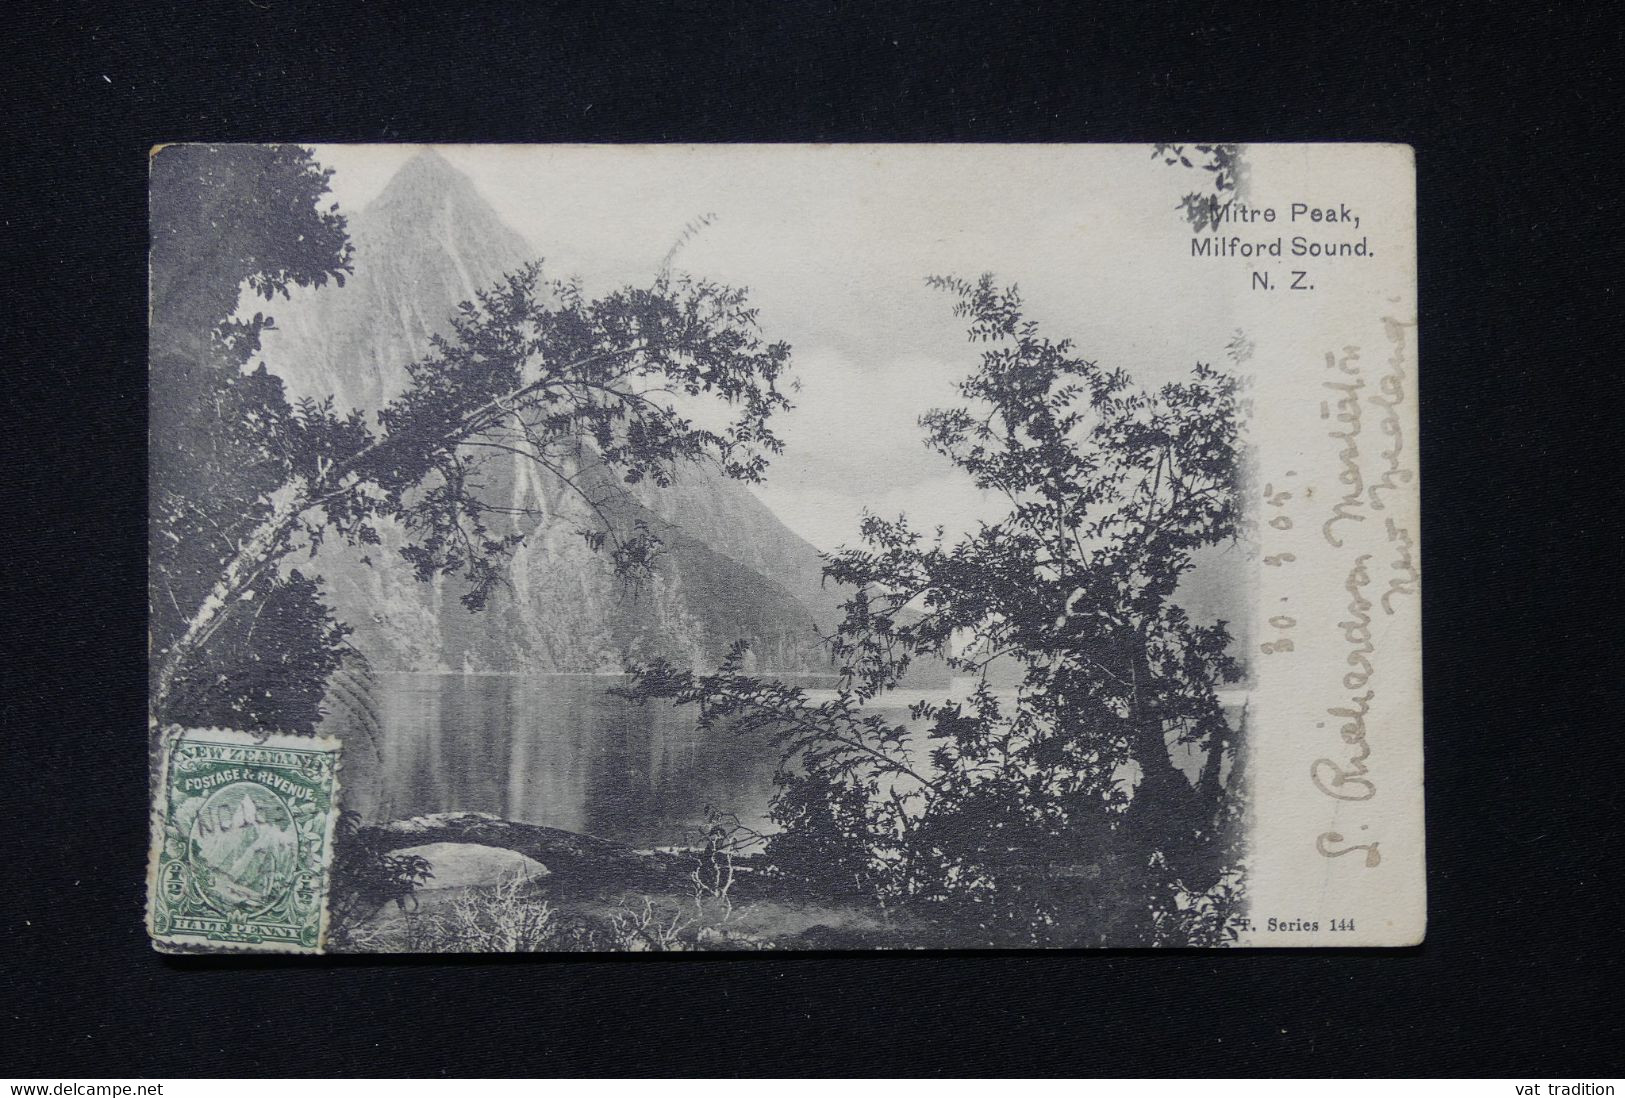 NOUVELLE ZÉLANDE - Oblitération De Wellington Sur Carte Postale En 1905 Pour La France - L 83727 - Briefe U. Dokumente